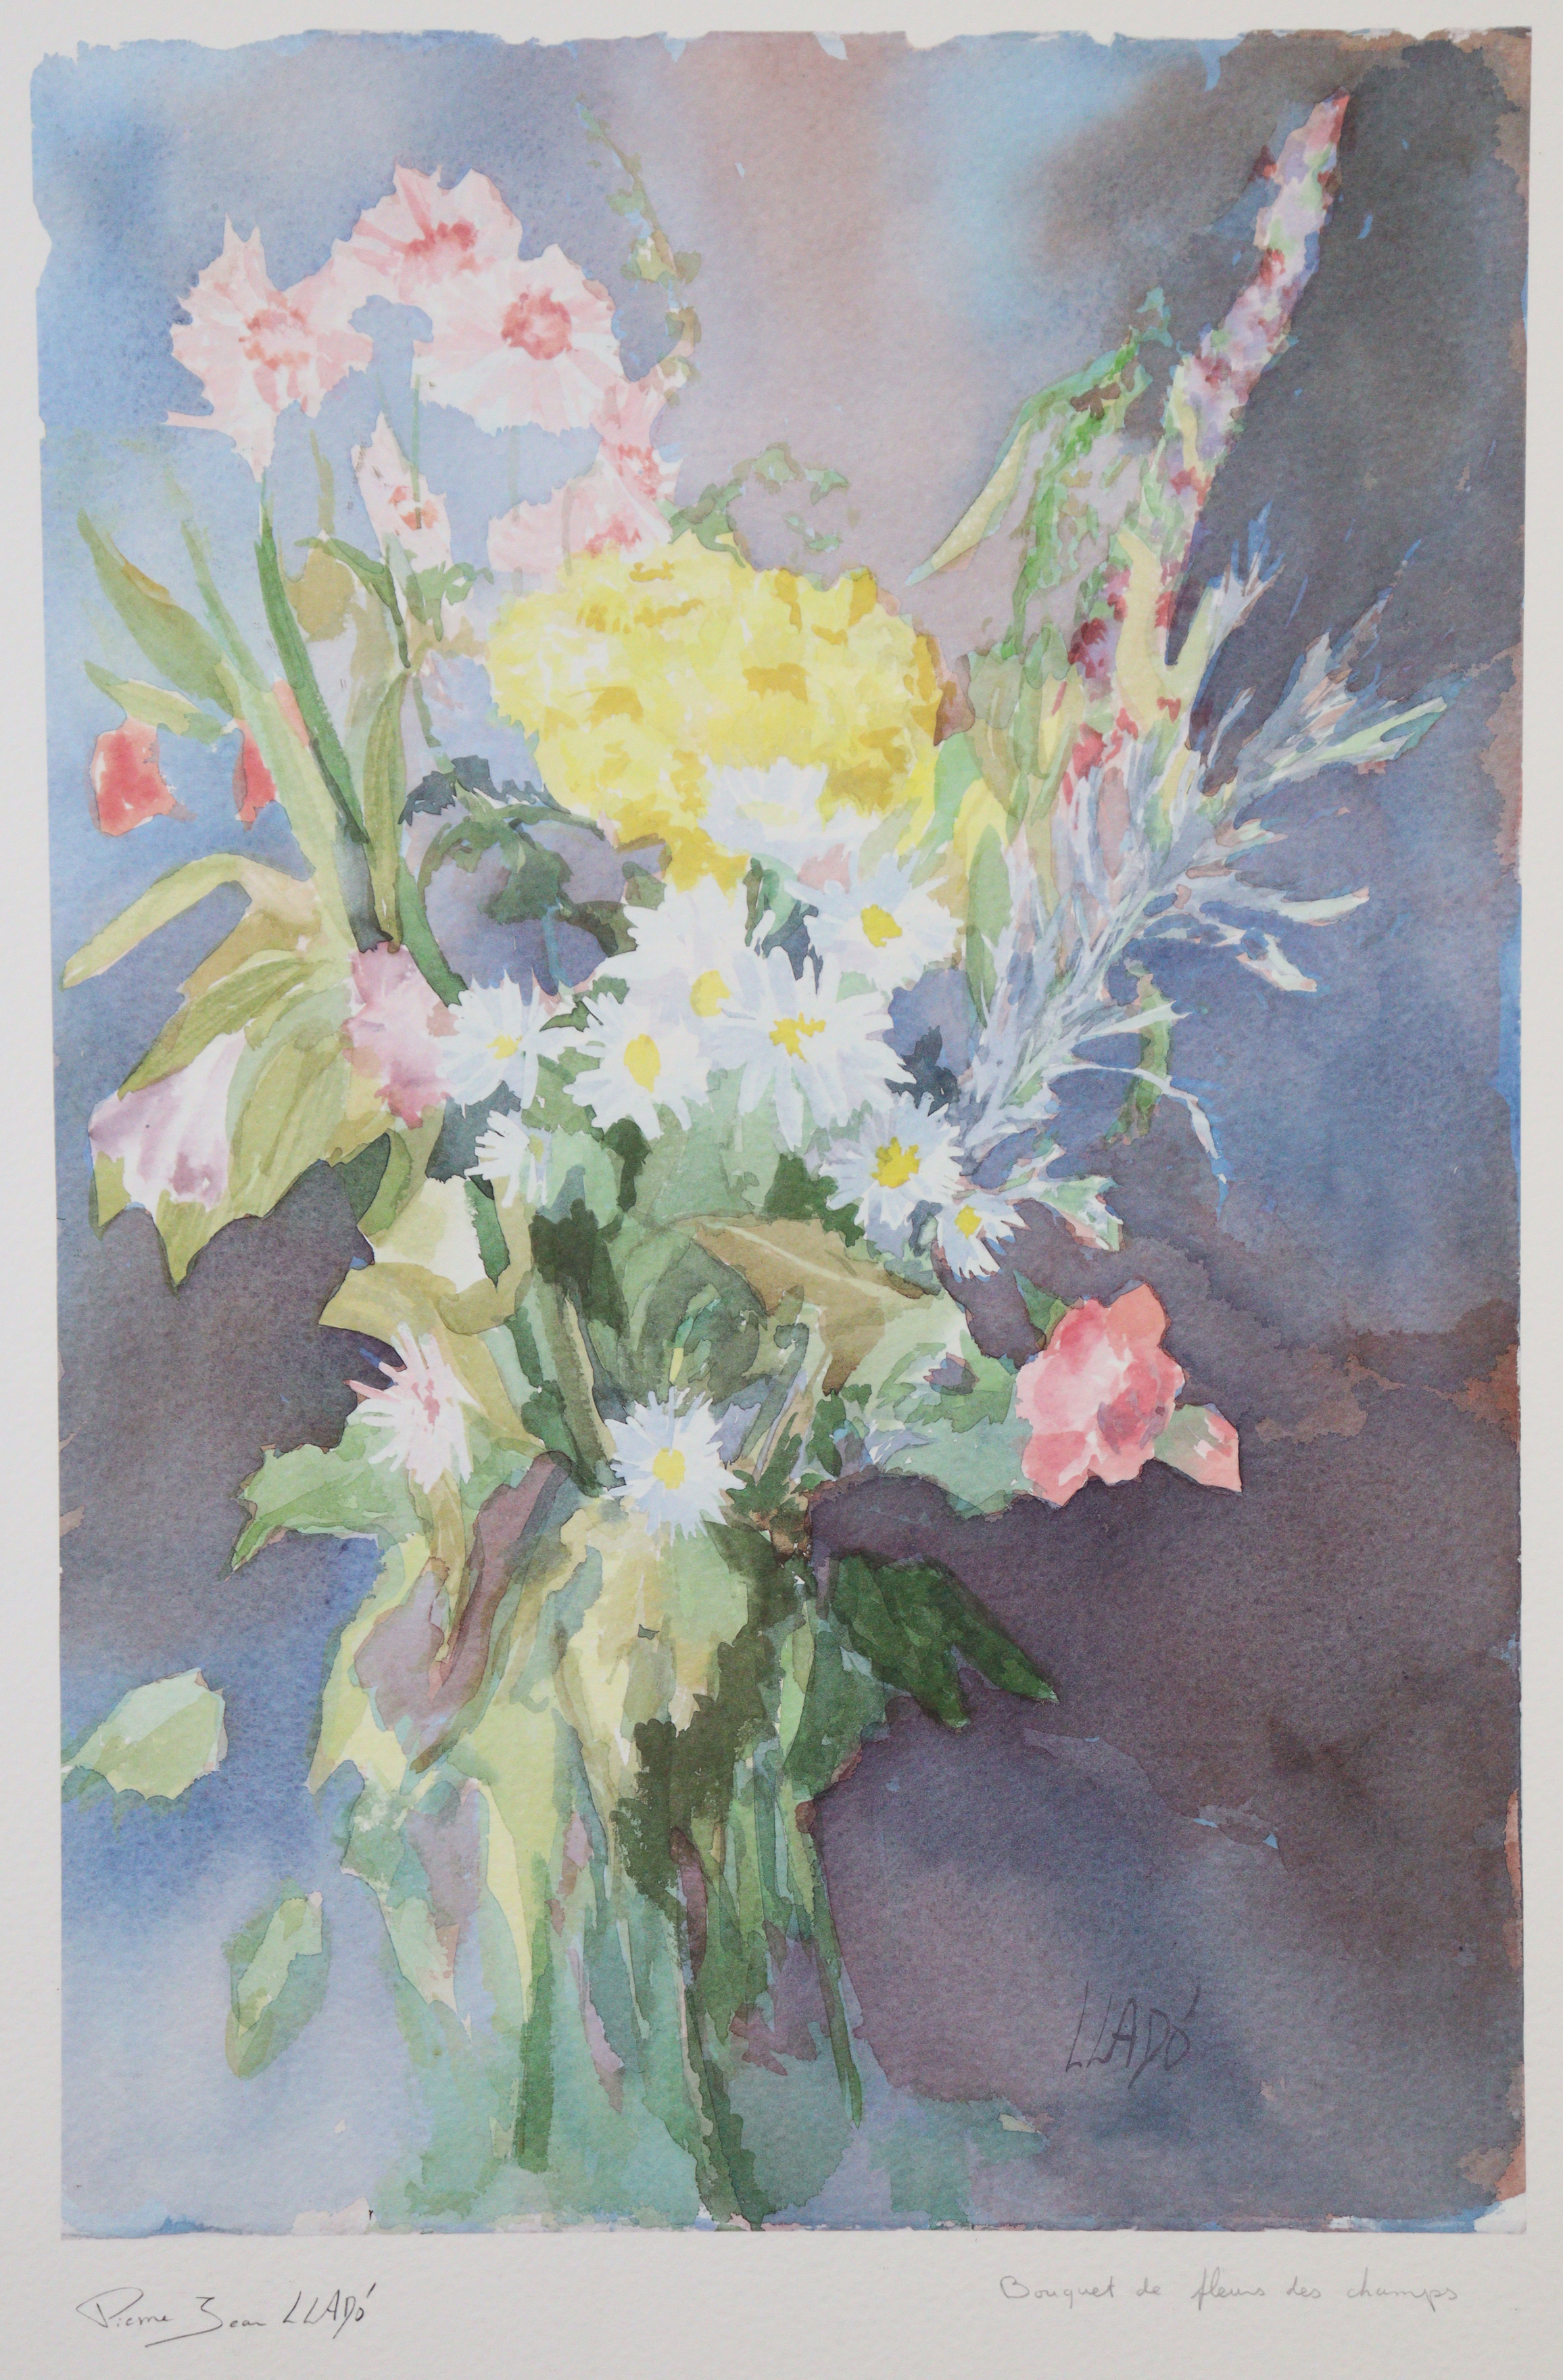 PIERRE JEAN LLADO (b. 1948) “Bouquet de fleurs des champs”, lithograph, signed & inscribed in - Image 2 of 7